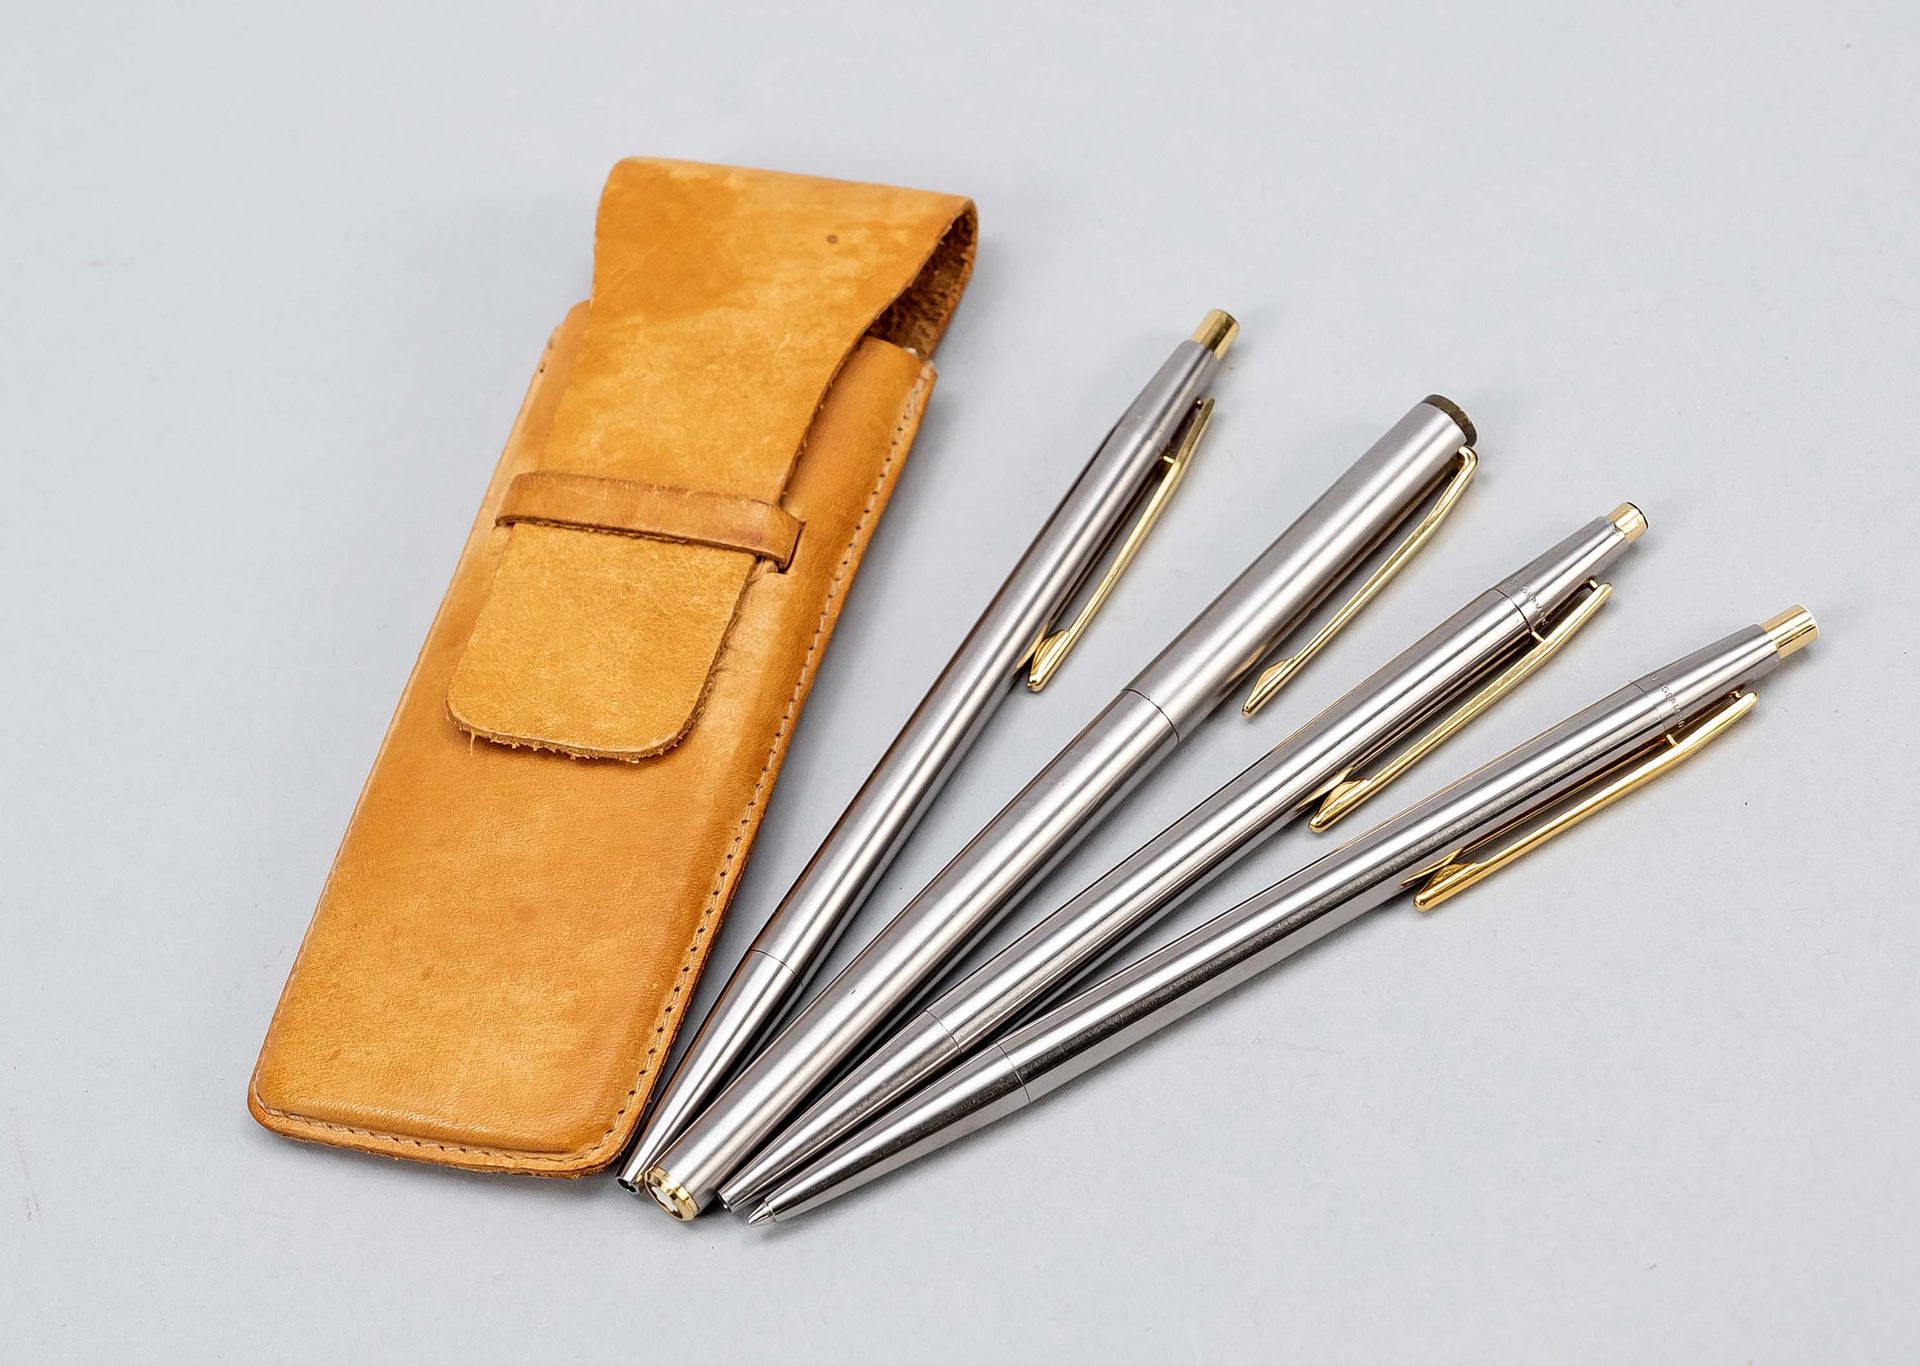 Null 勃朗峰四件套，20世纪下半叶，银色的箱子，有镀金的应用，2支圆珠笔（1支机械故障），机械铅笔和parton钢笔，长14厘米，在箱子里，长15厘米。